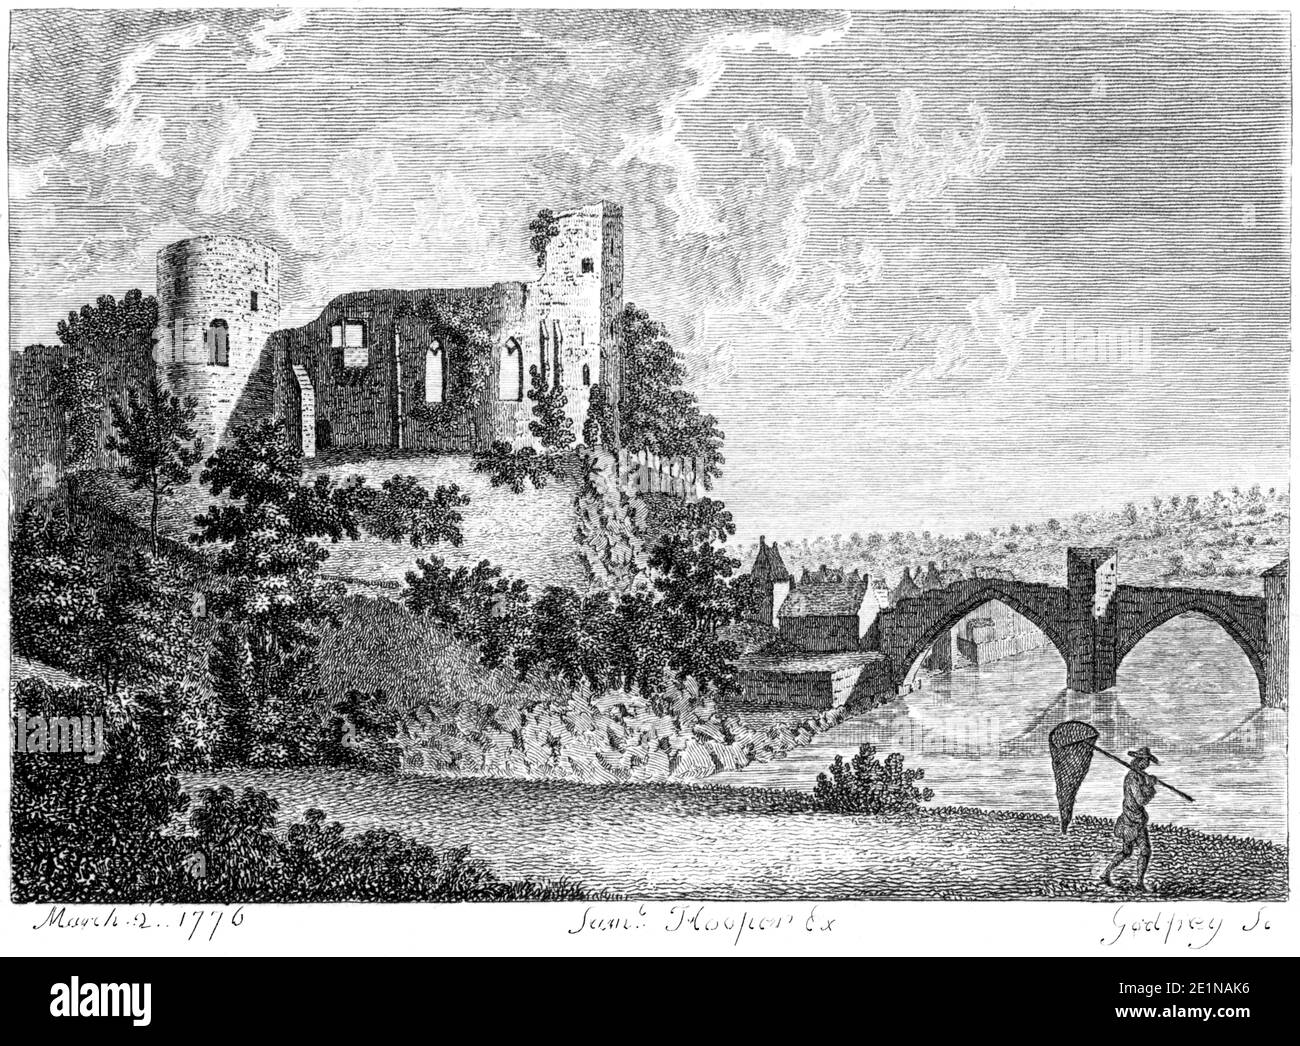 Ein Stich von Schloss Bernerds (Barnard Castle), veröffentlicht am 2. März 1776, gescannt in hoher Auflösung aus einem Buch, das in den 1770er Jahren veröffentlicht wurde. Stockfoto